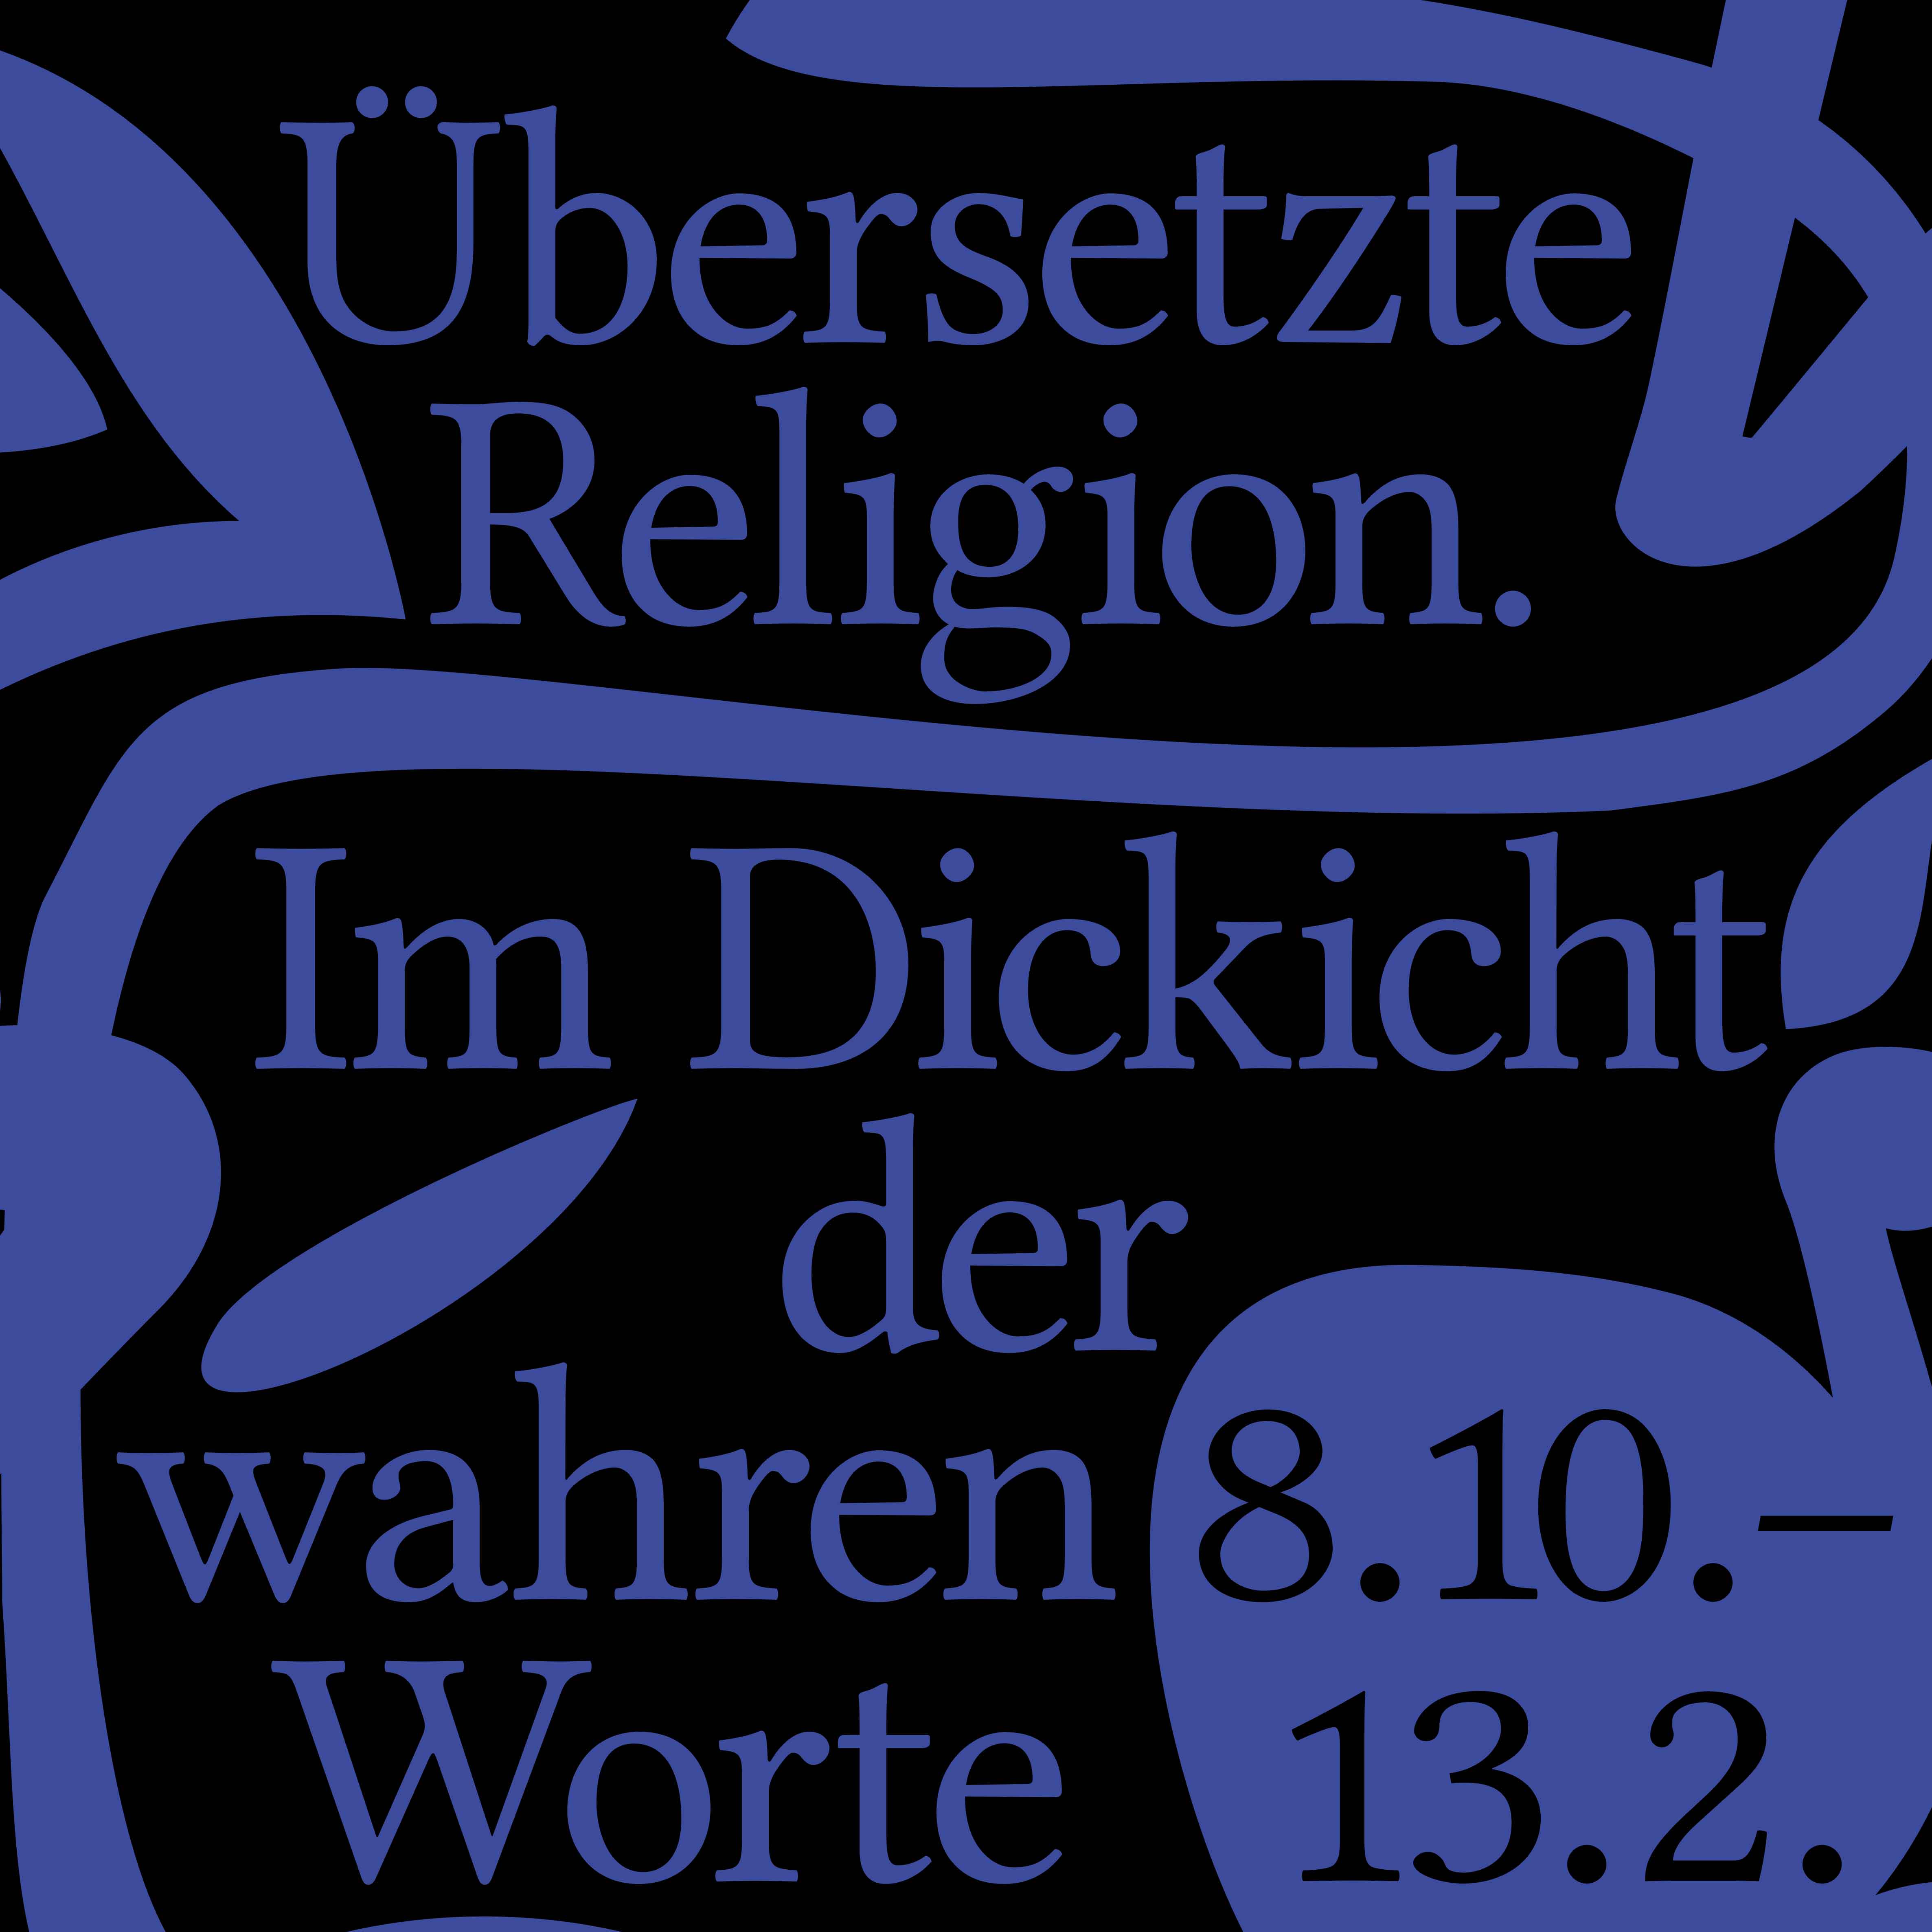 Ausstellung "Übersetzte Religion"